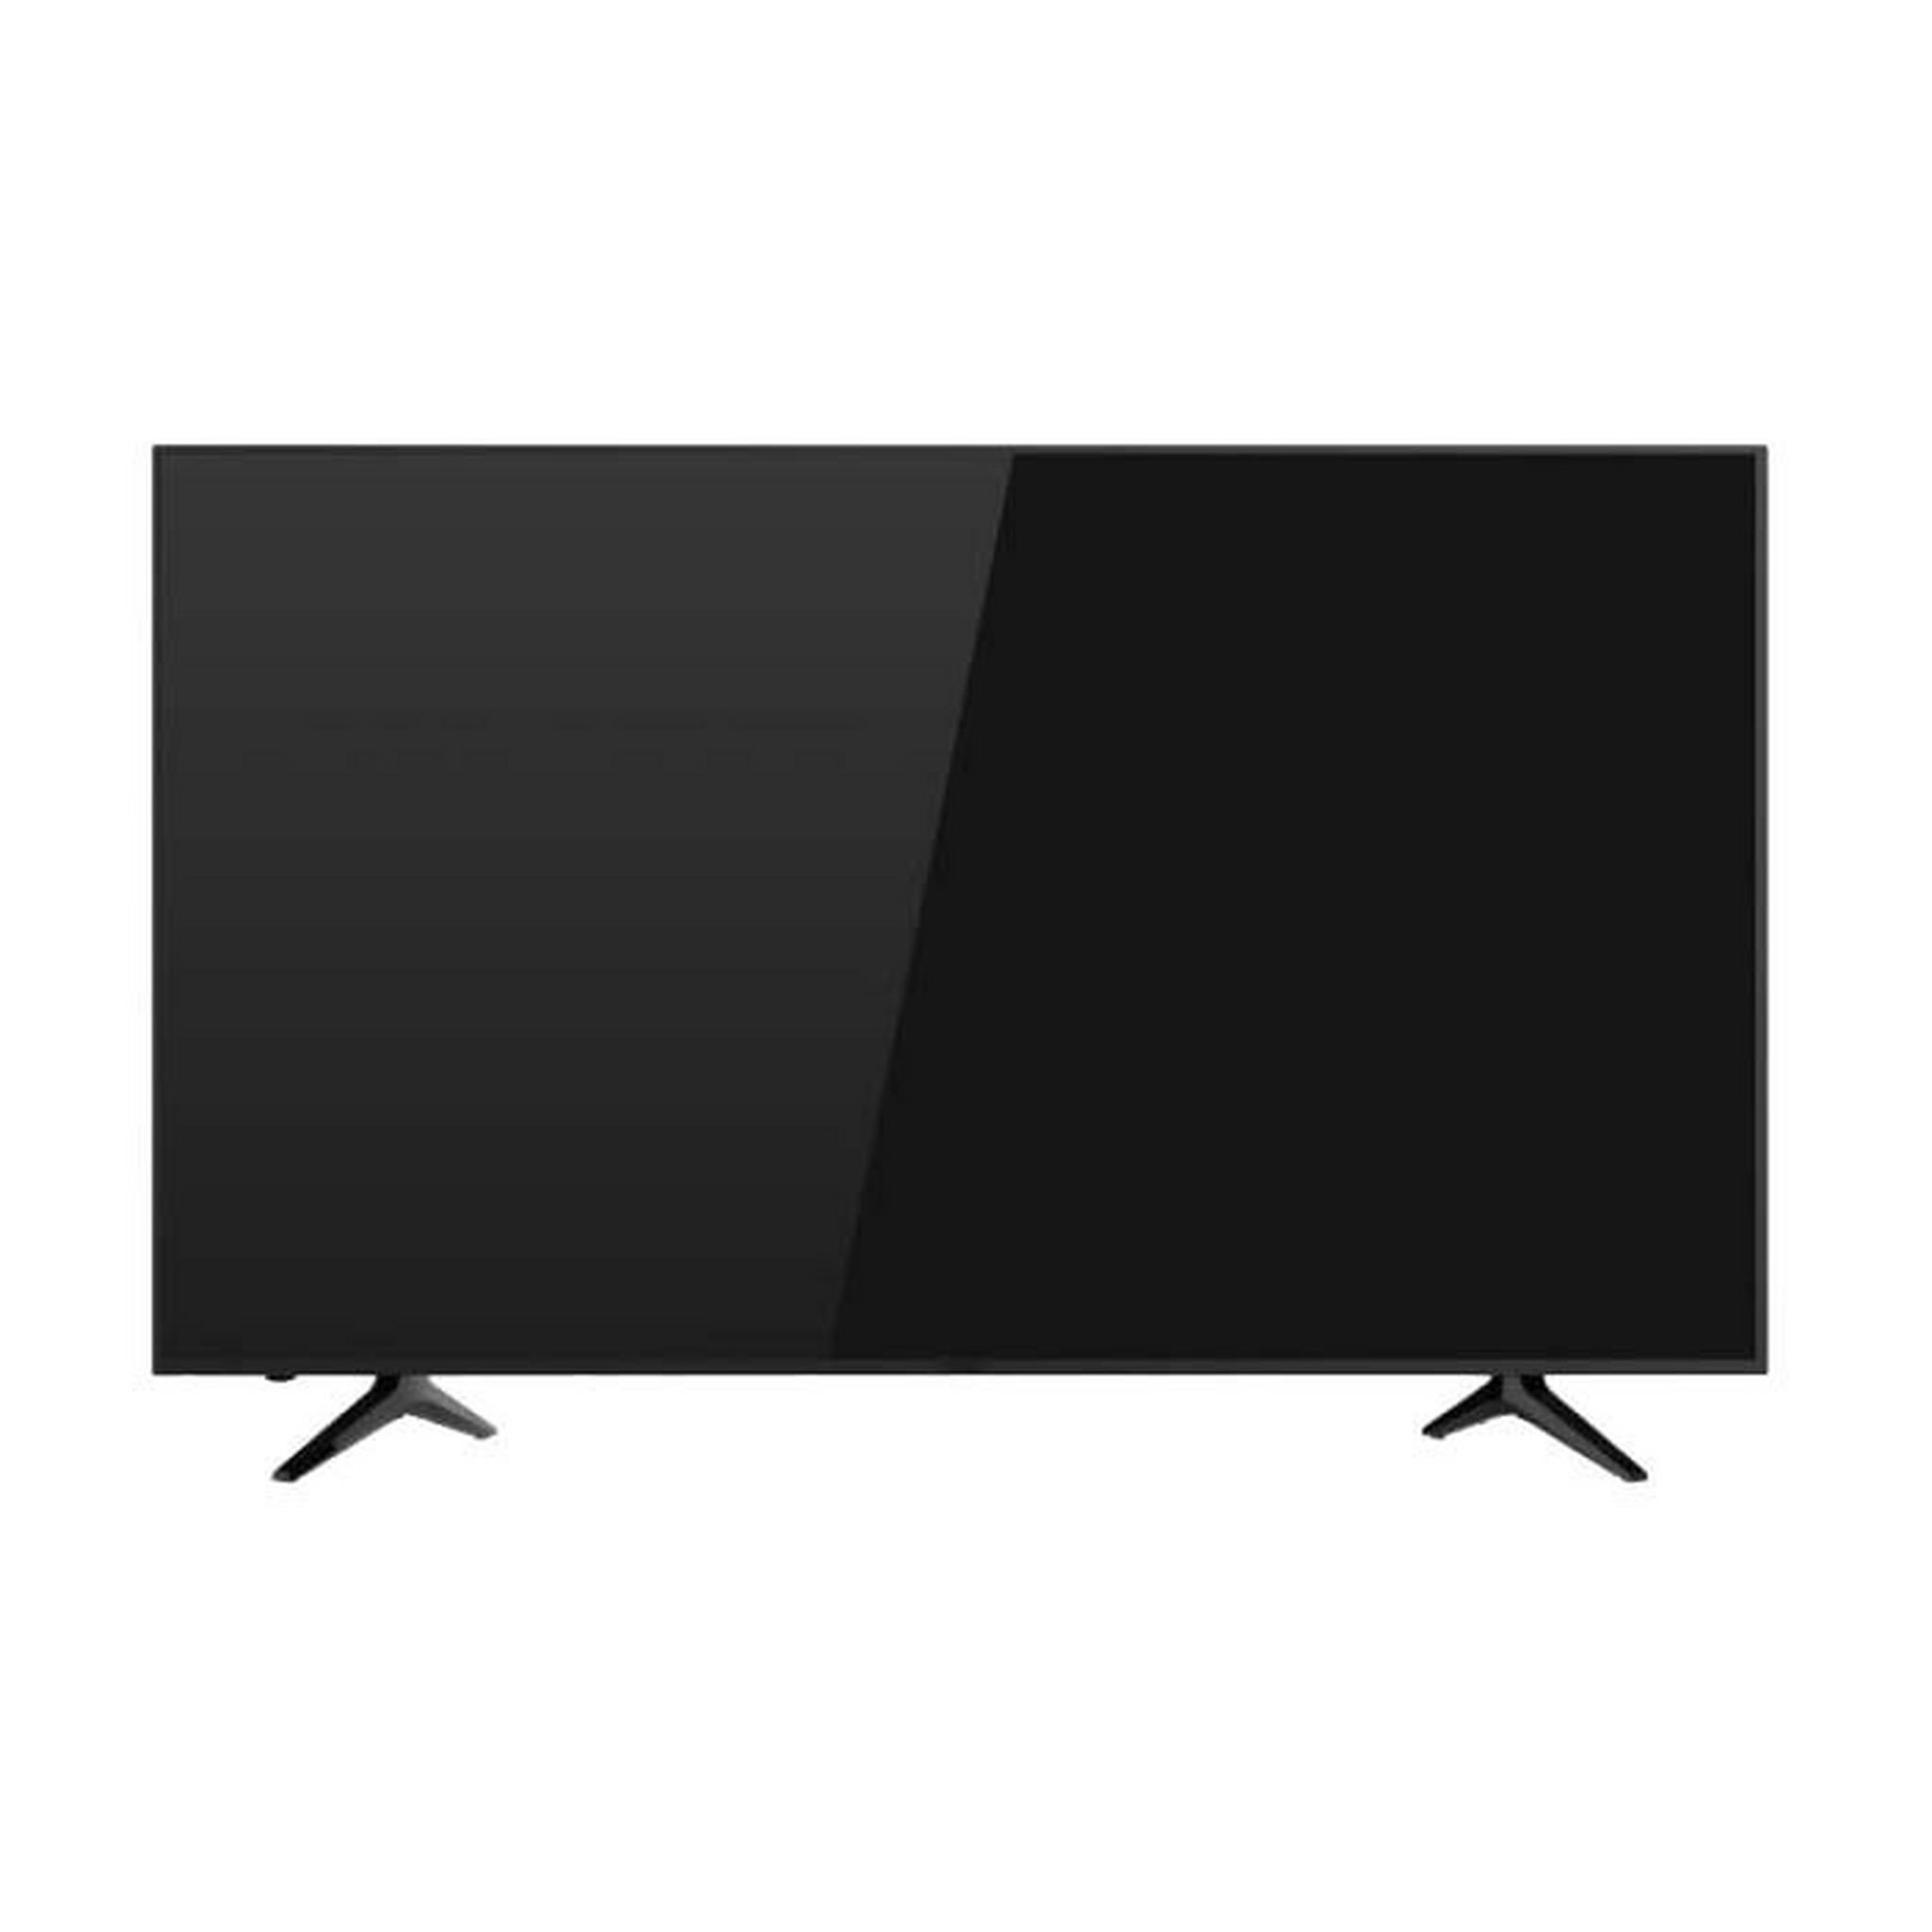 تلفزيون أل إي دي الذكي فائق الوضوح بحجم 65 بوصة من ونسا - (WUD65I8850S)